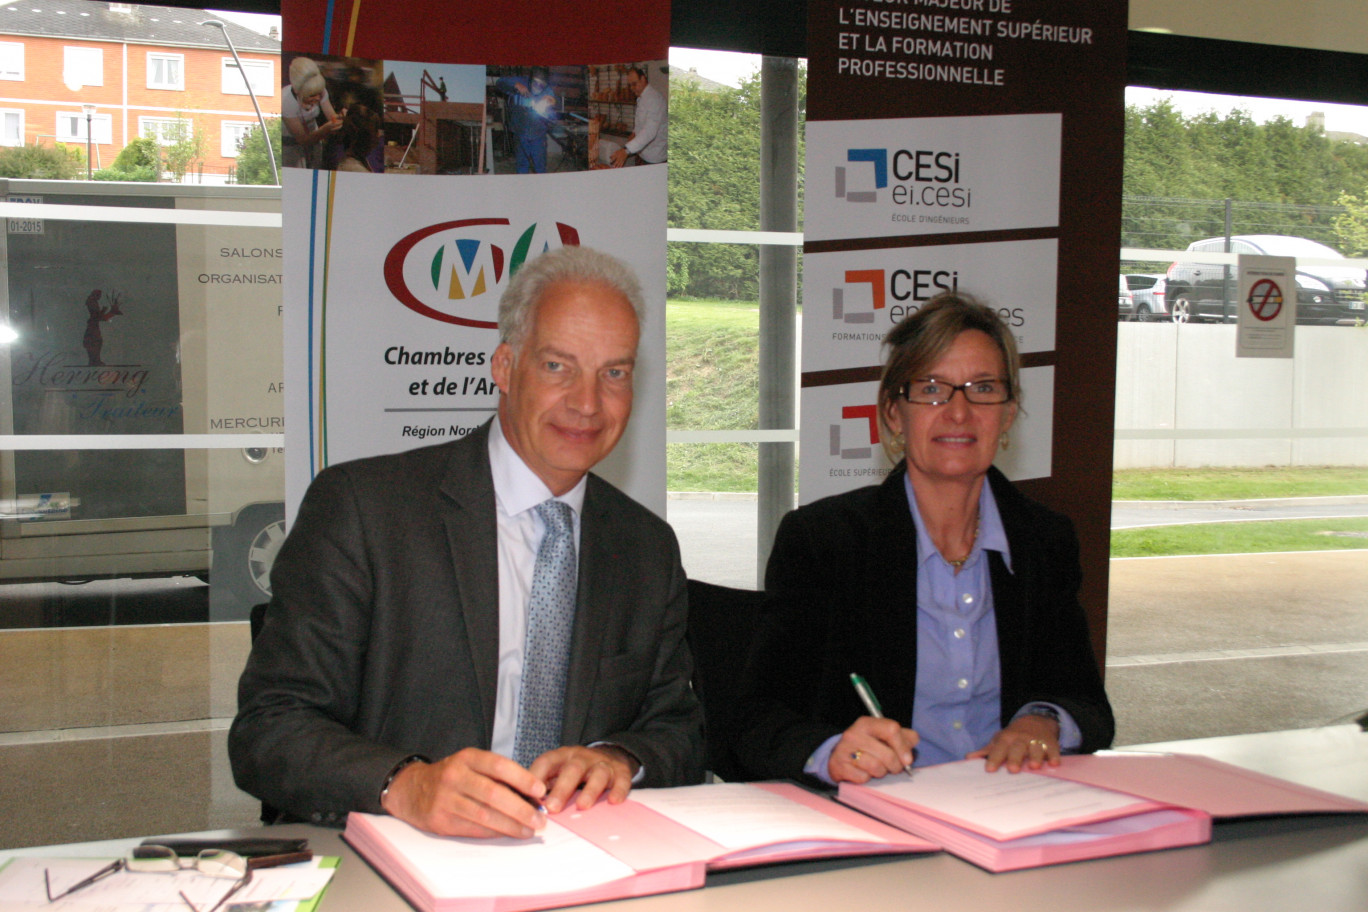 Lors de la signature : Alain Griset, président de la Chambre des métiers et de l’artisanat du Nord-Pas de Calais, et Christine Dispa, directrice régionale du groupe CESI.